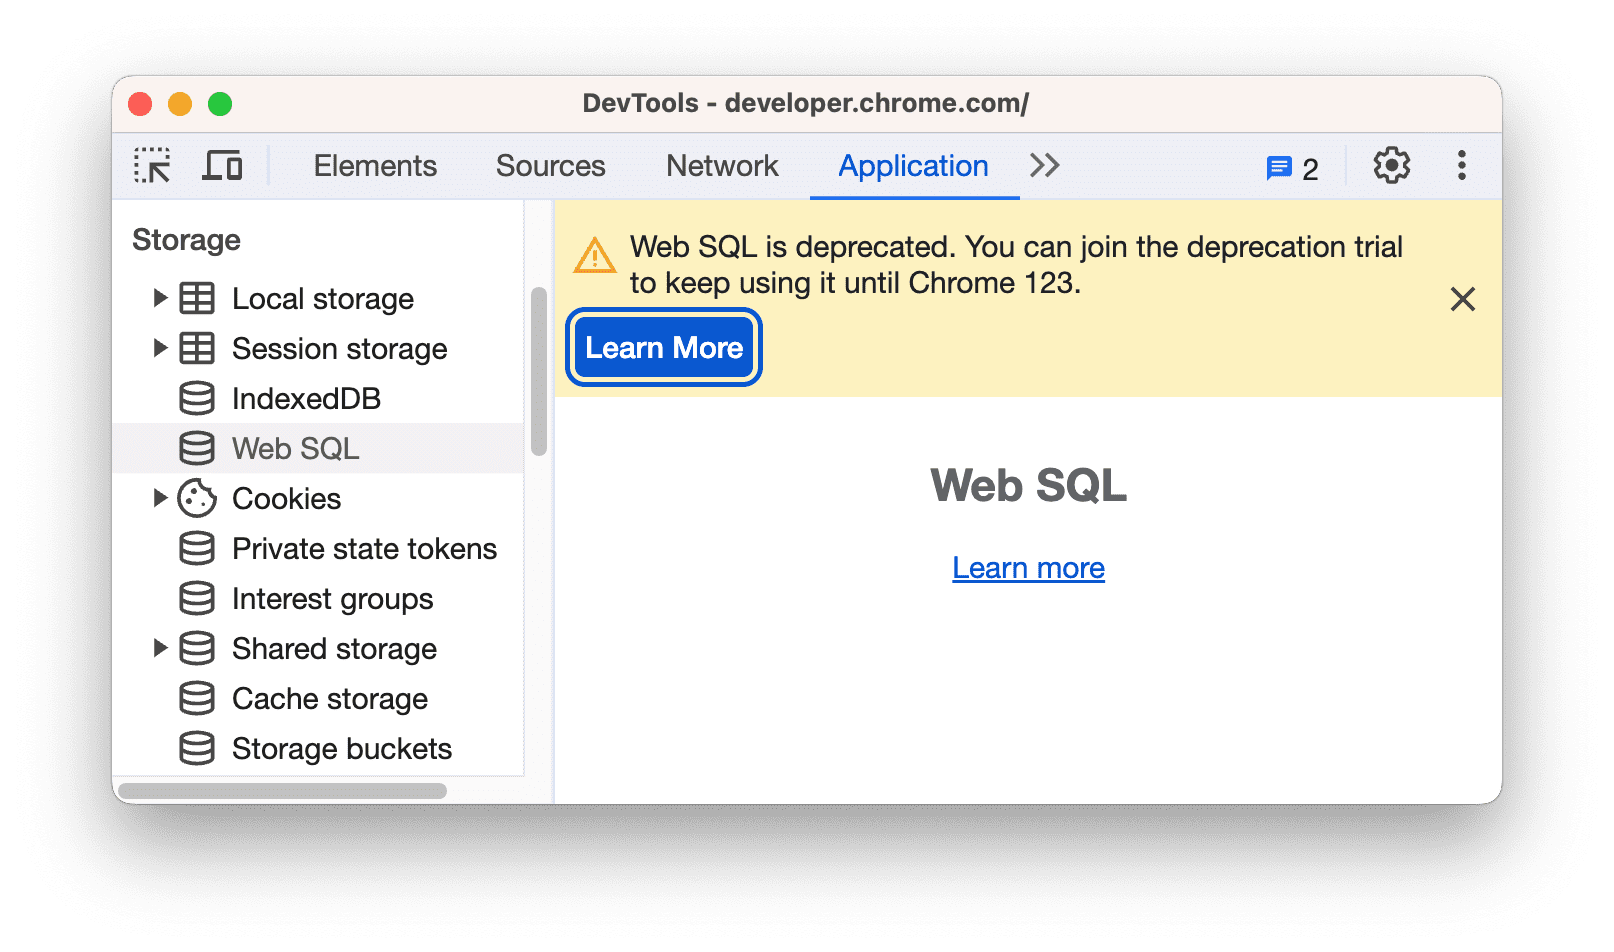 O aviso de descontinuação do Web SQL.